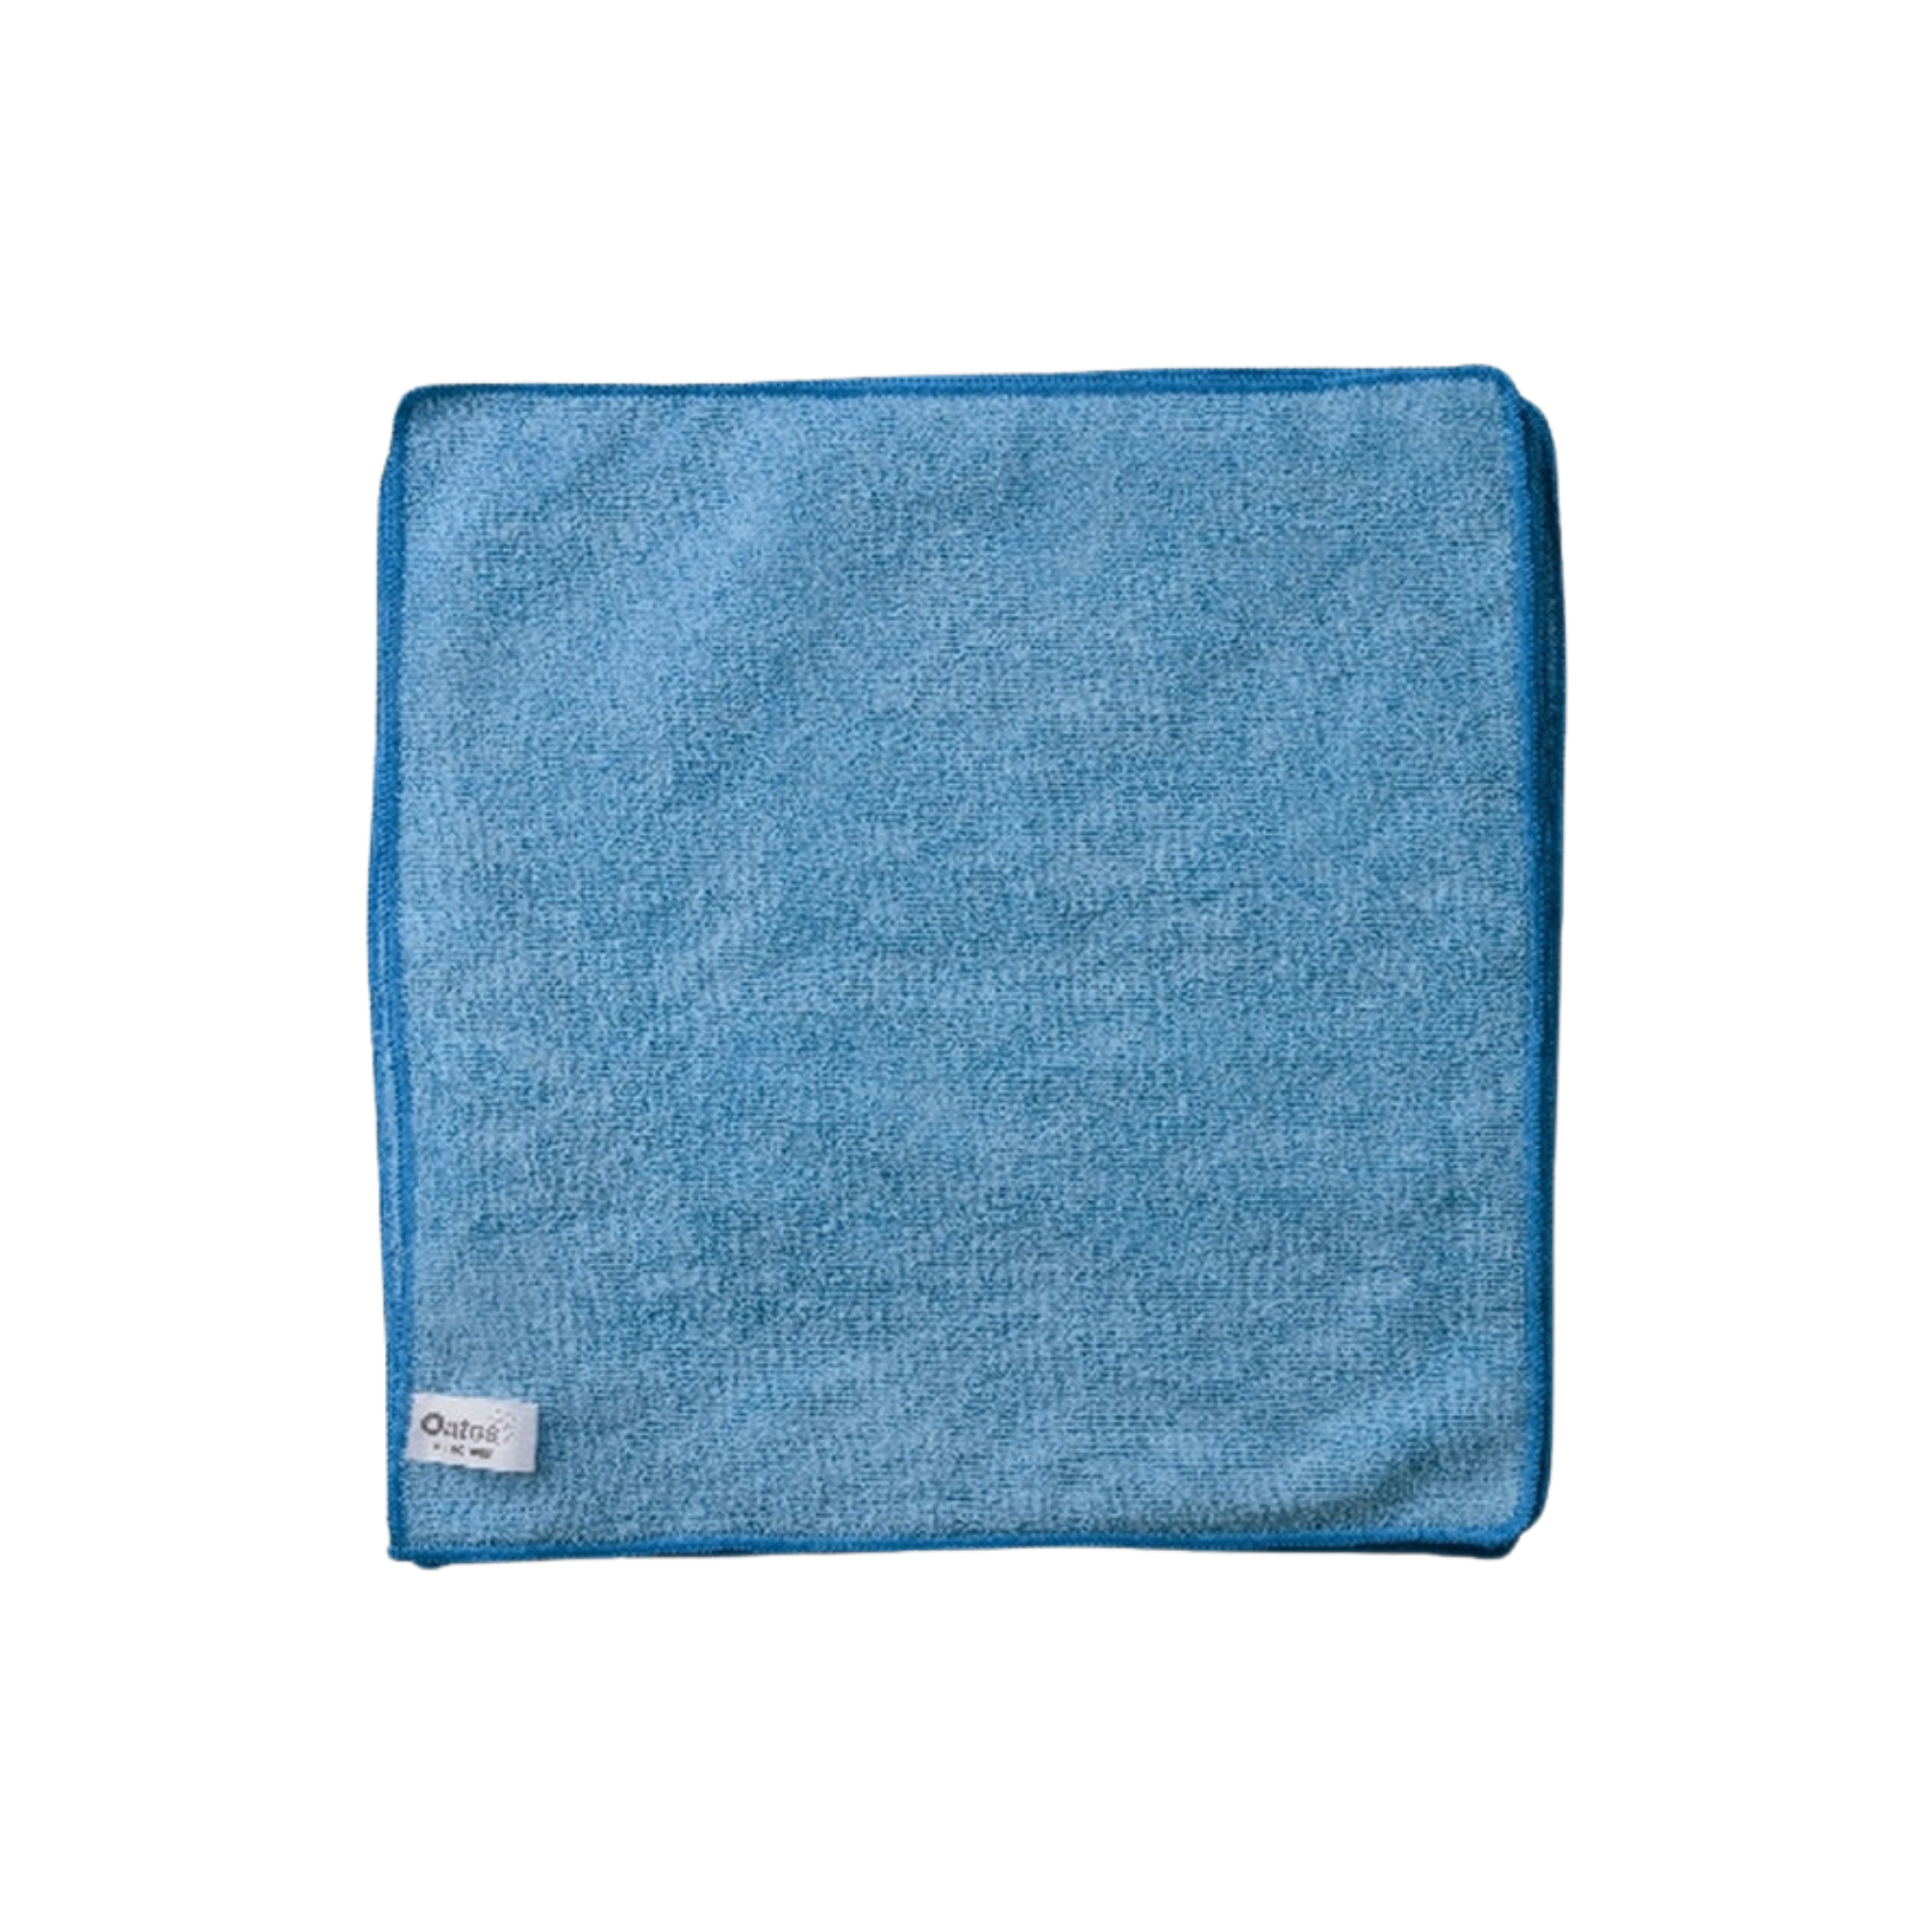 Oates Microfibre Cloths 10 Pack - Blue